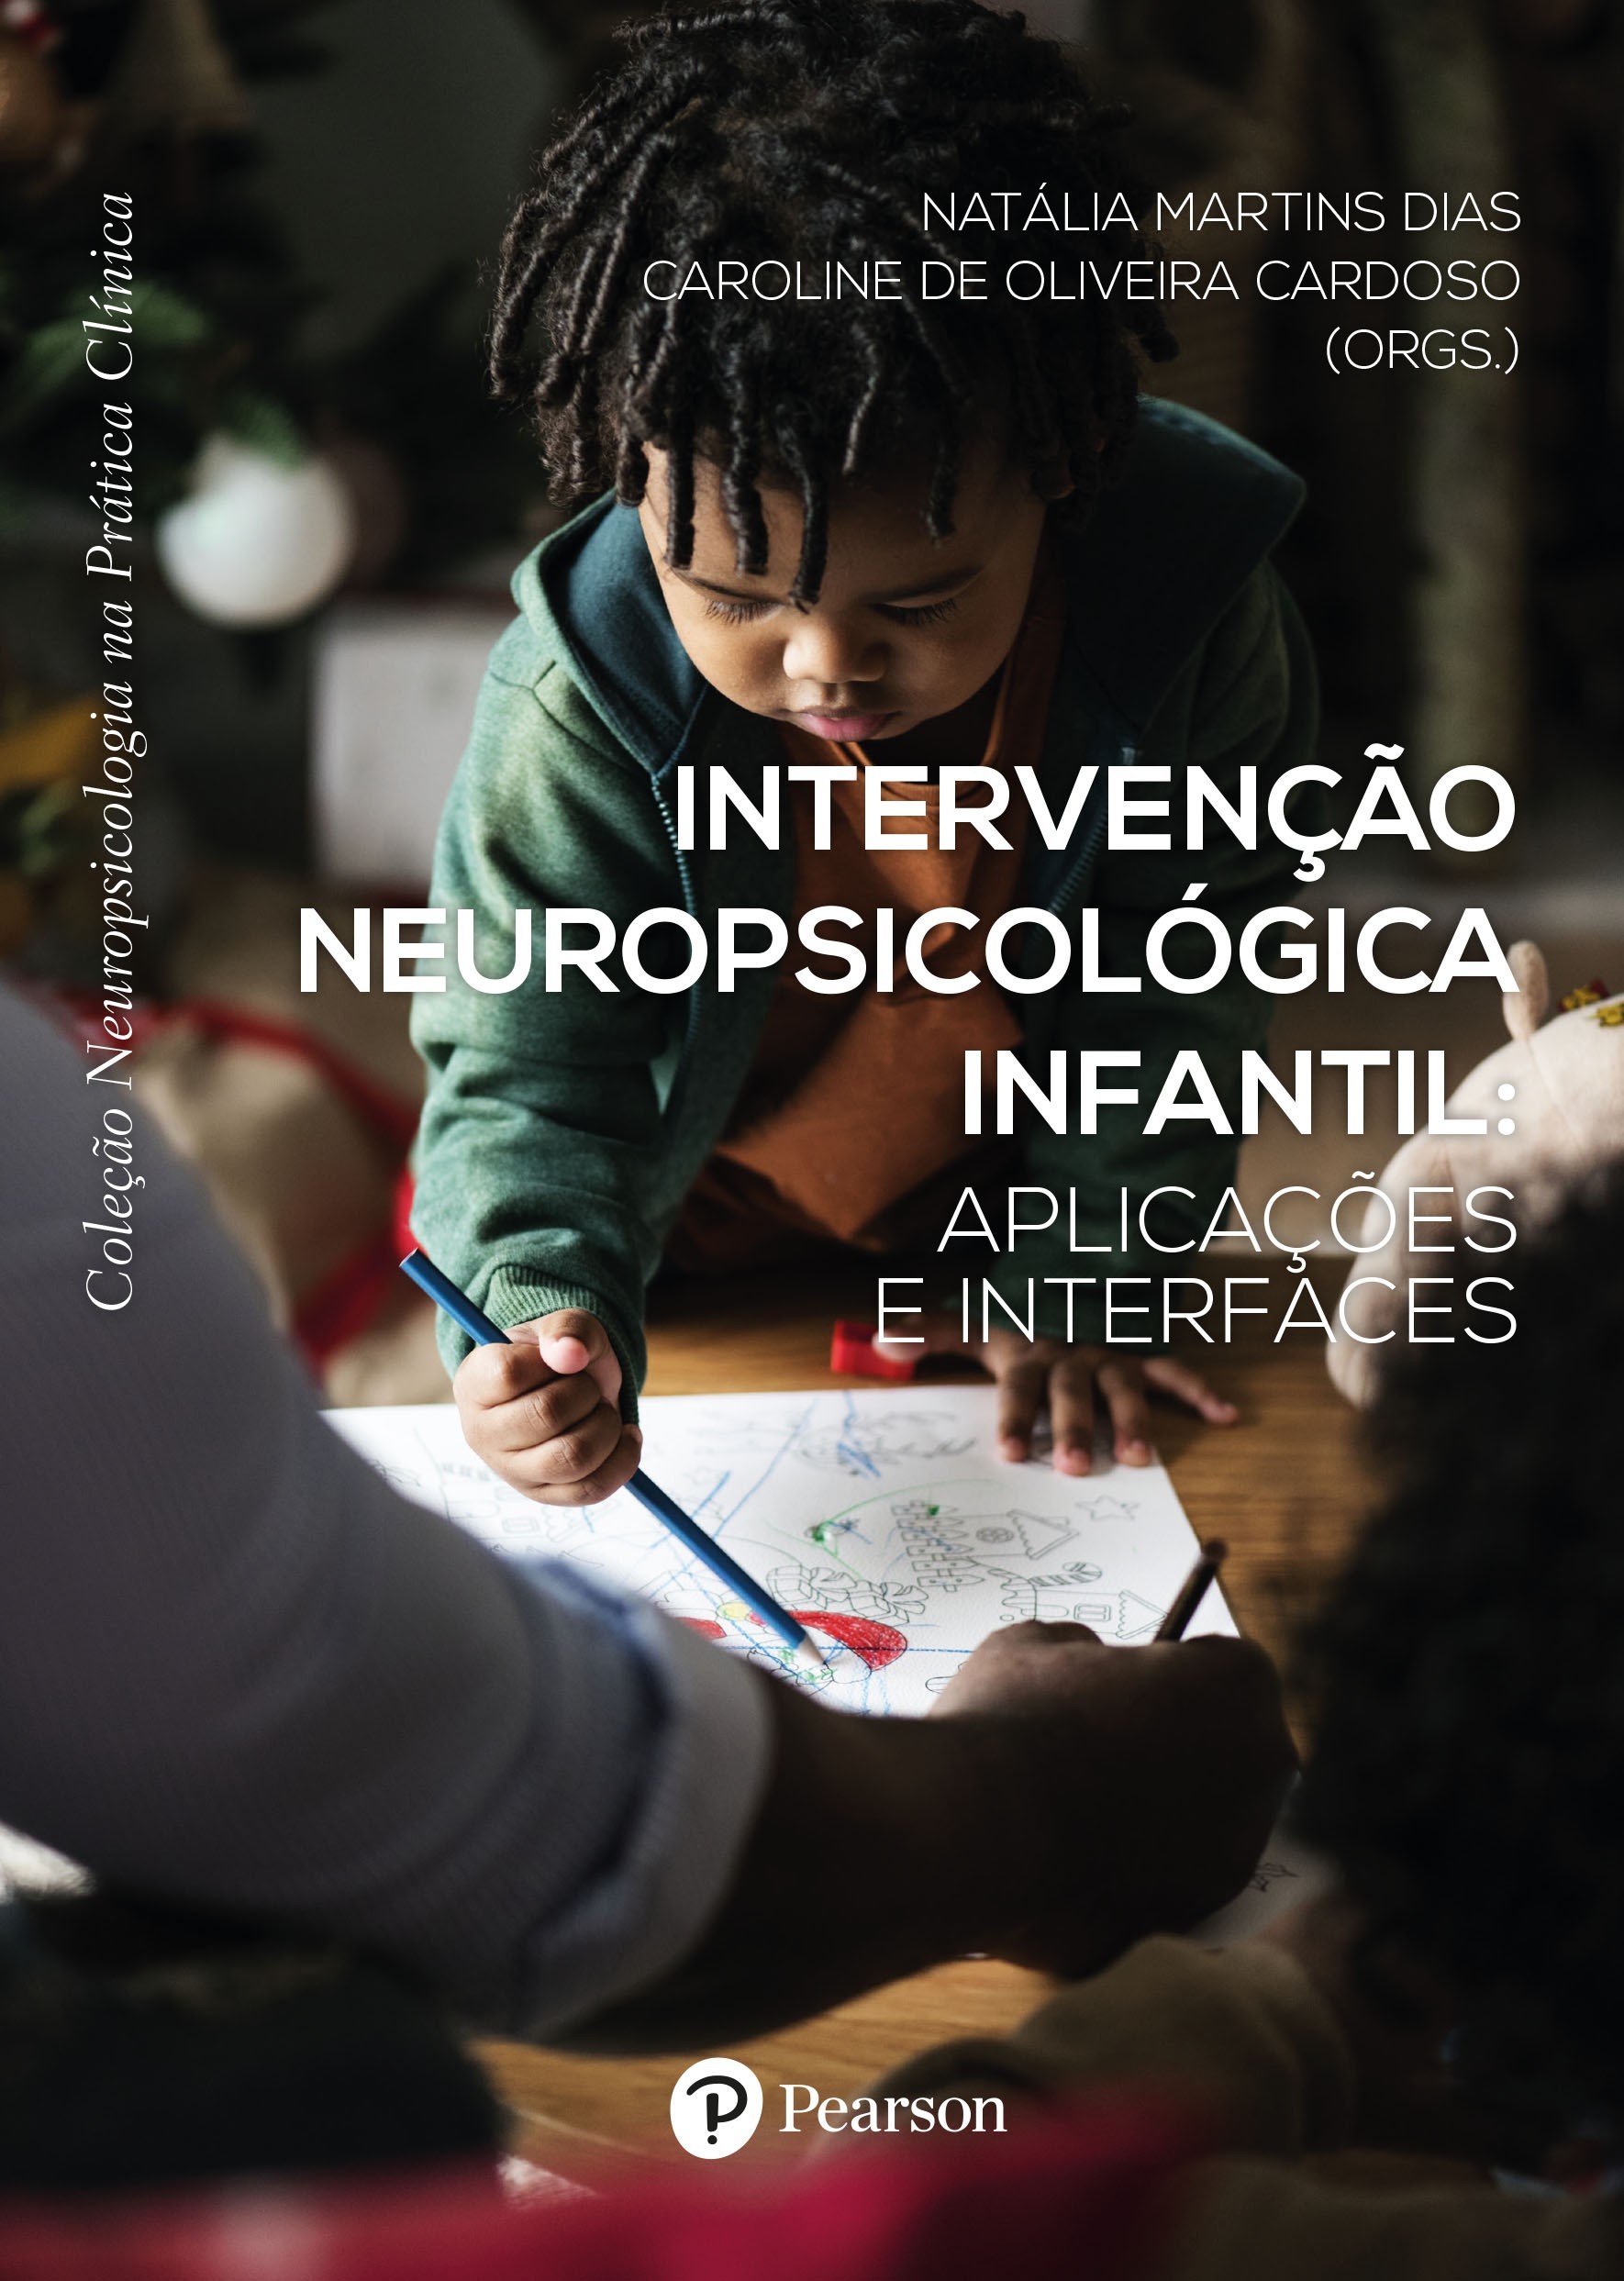 INTERVENCAO NEUROPSICOLÓGICA INFANTIL: APLICAÇÕES E INTERFACES -COLEÇÃO NEUROPSICOLOGIA NA PRÁTICA CLÍNICA